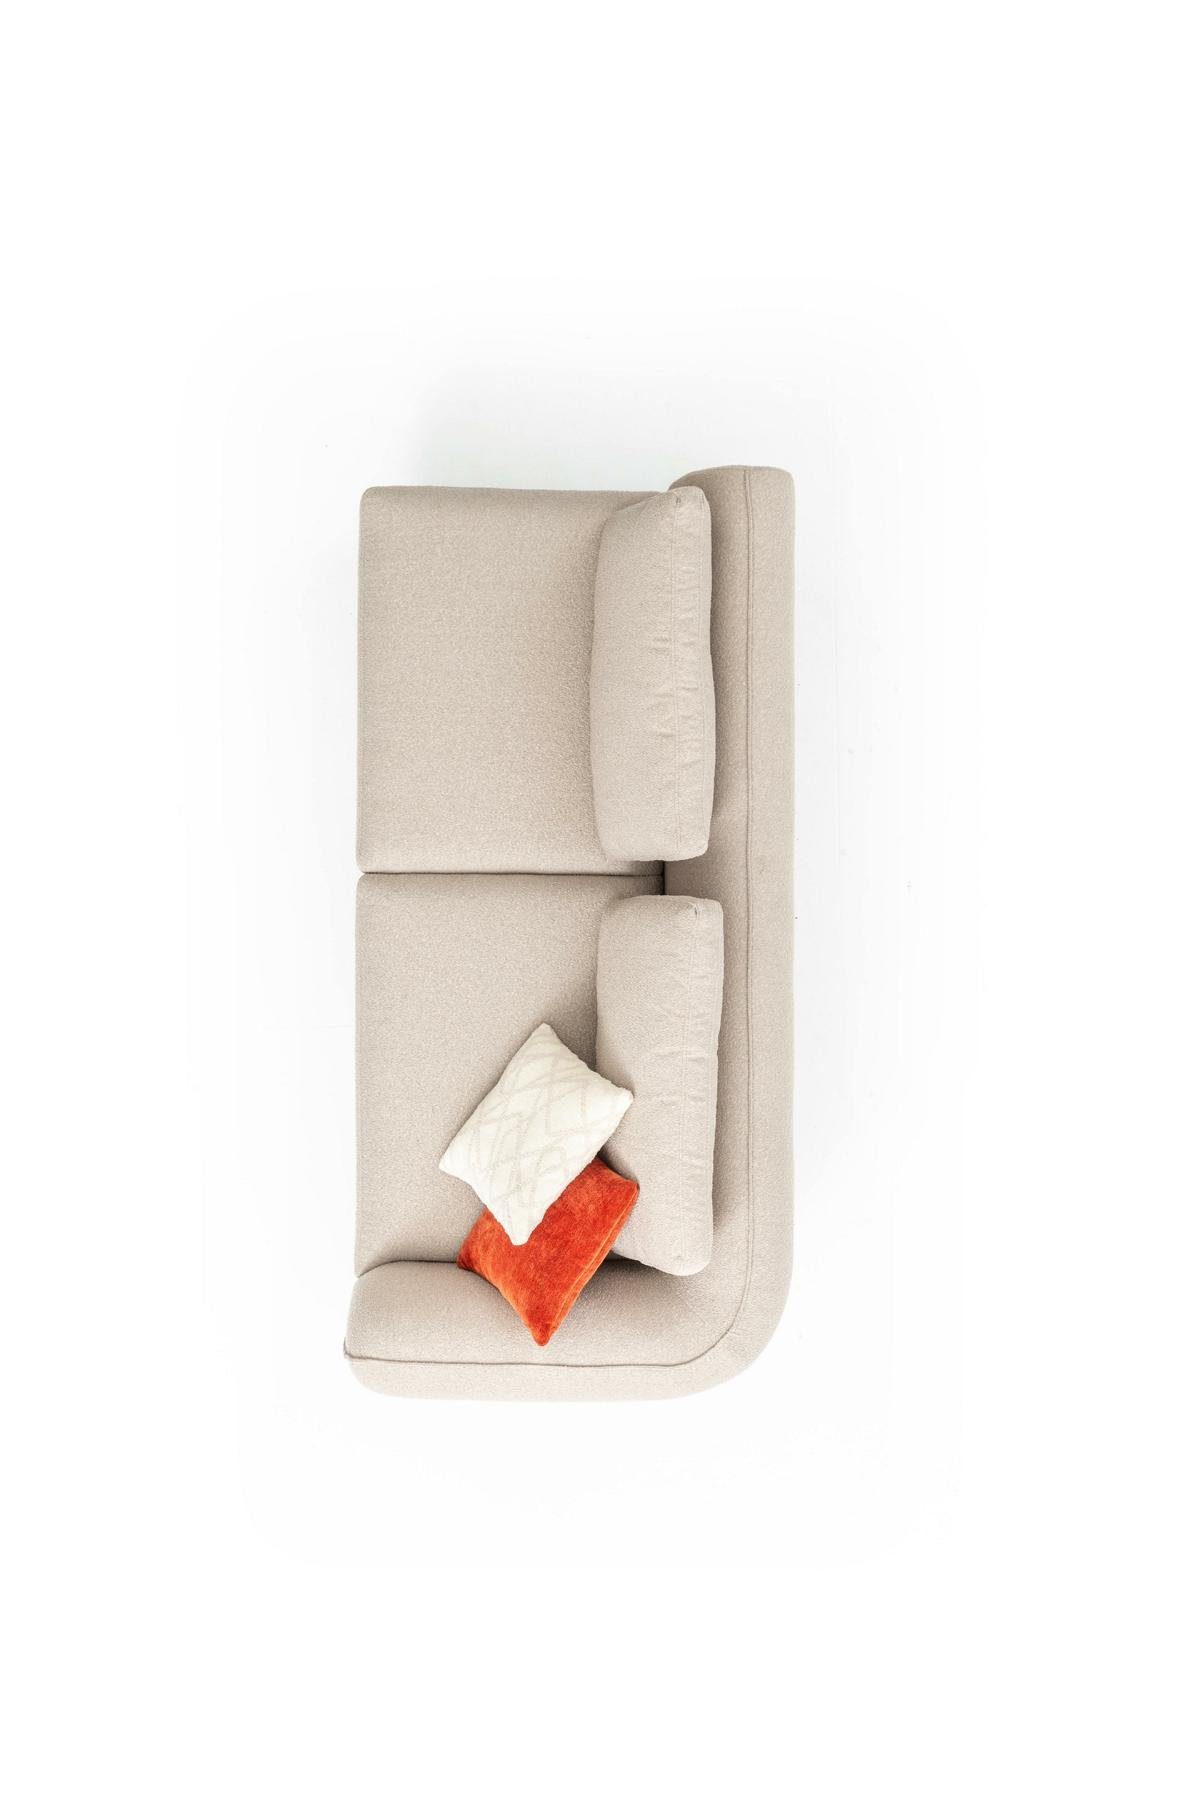 Wohnzimmer Made L 420x170, in Ecksofa Ecksofa Beige Sofa Modern Form JVmoebel Luxus Europe